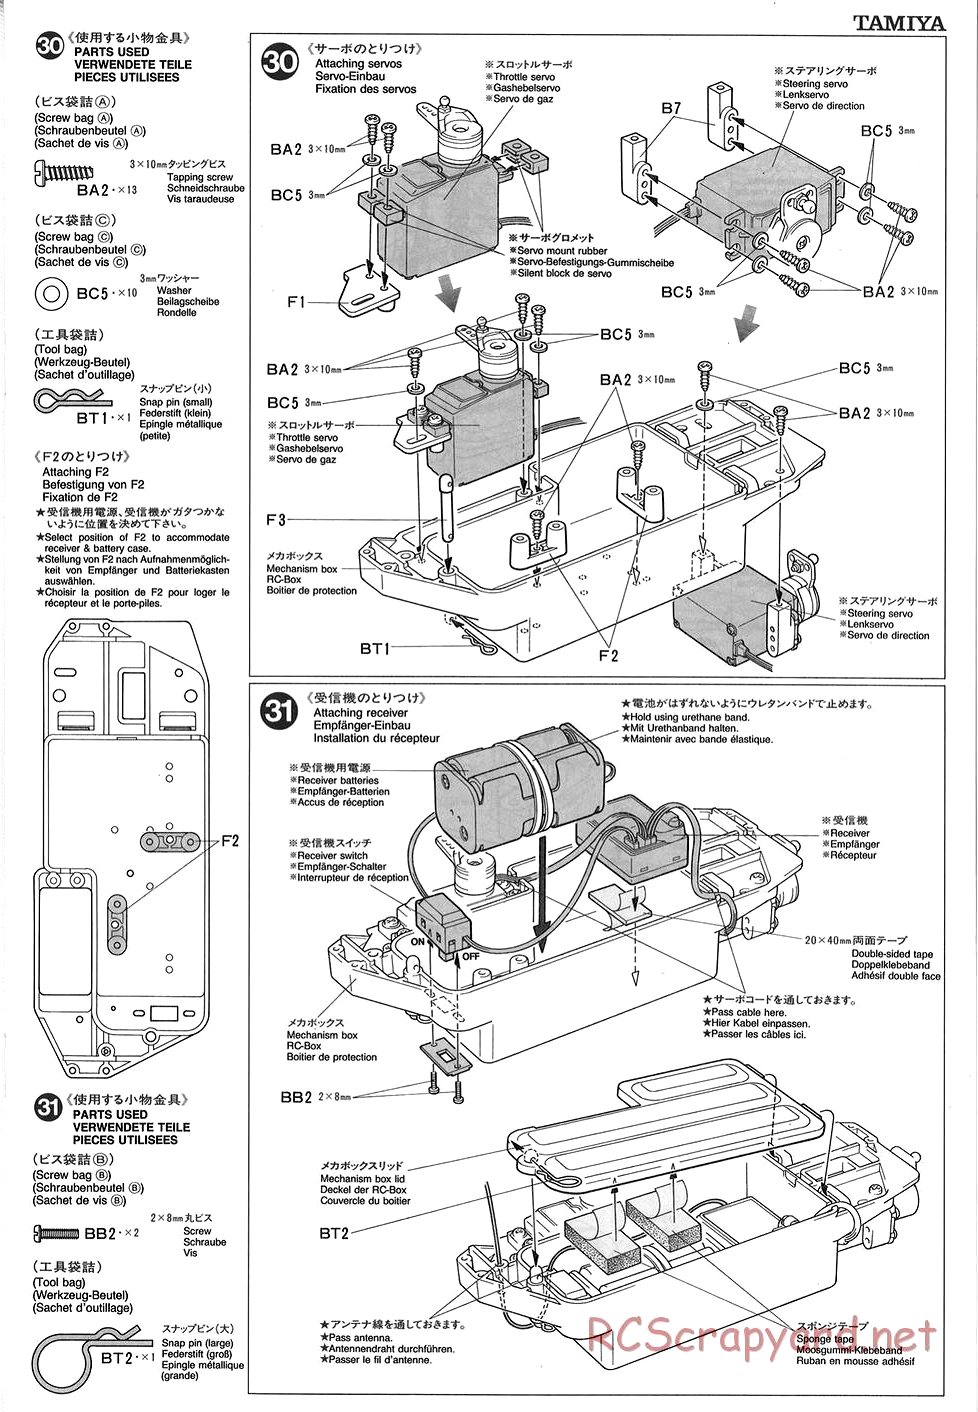 Tamiya - TGX Mk.1 Chassis - Manual - Page 15